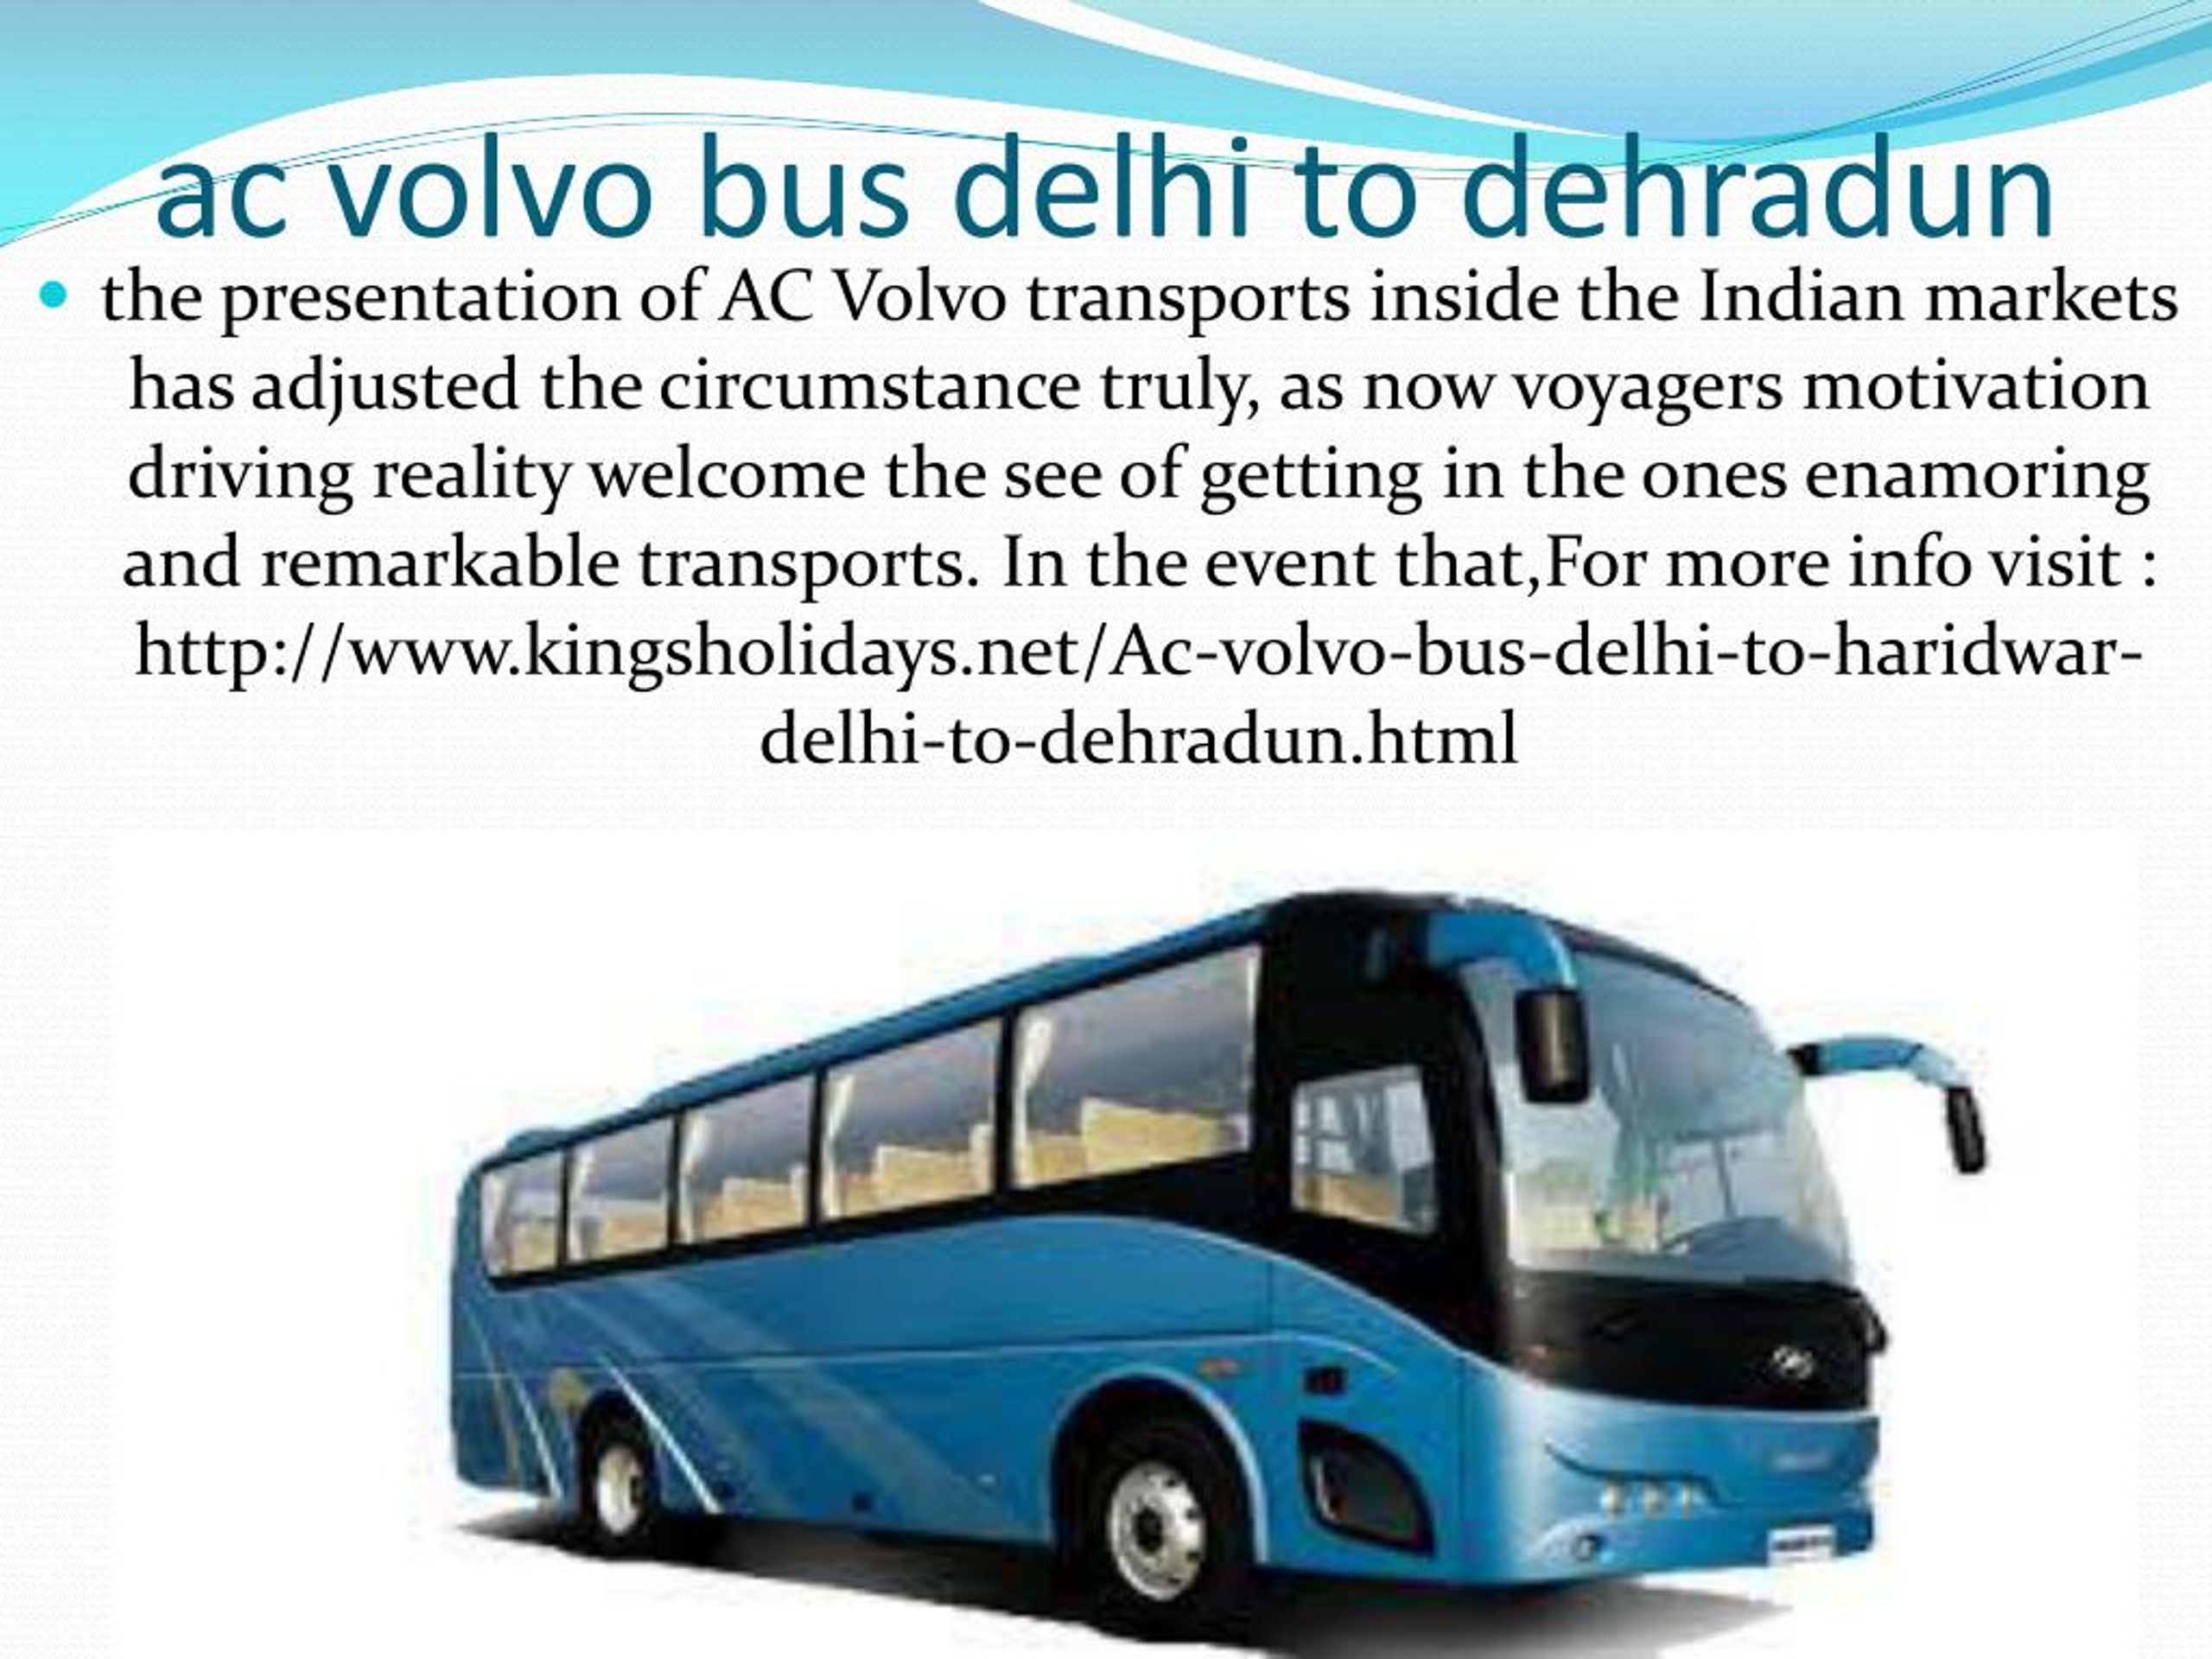 PPT - ac volvo bus delhi to haridwar PowerPoint Presentation, free